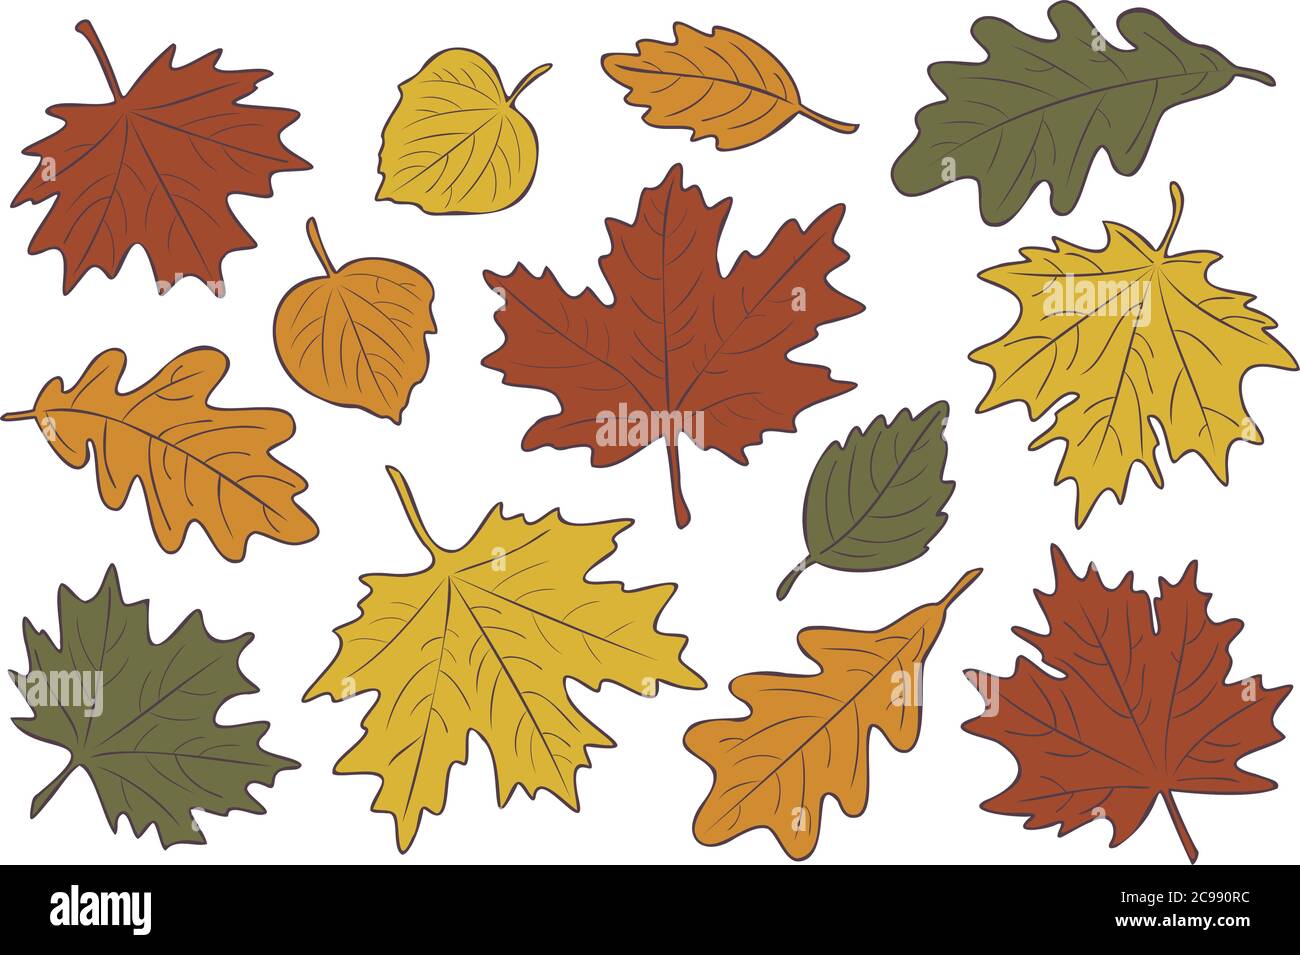 Illustrazione vettoriale, insieme di foglie d'autunno realistiche e luminose. Caduta foglie sfondo. Foglie di acero, tiglio, quercia e betulla. Illustrazione Vettoriale